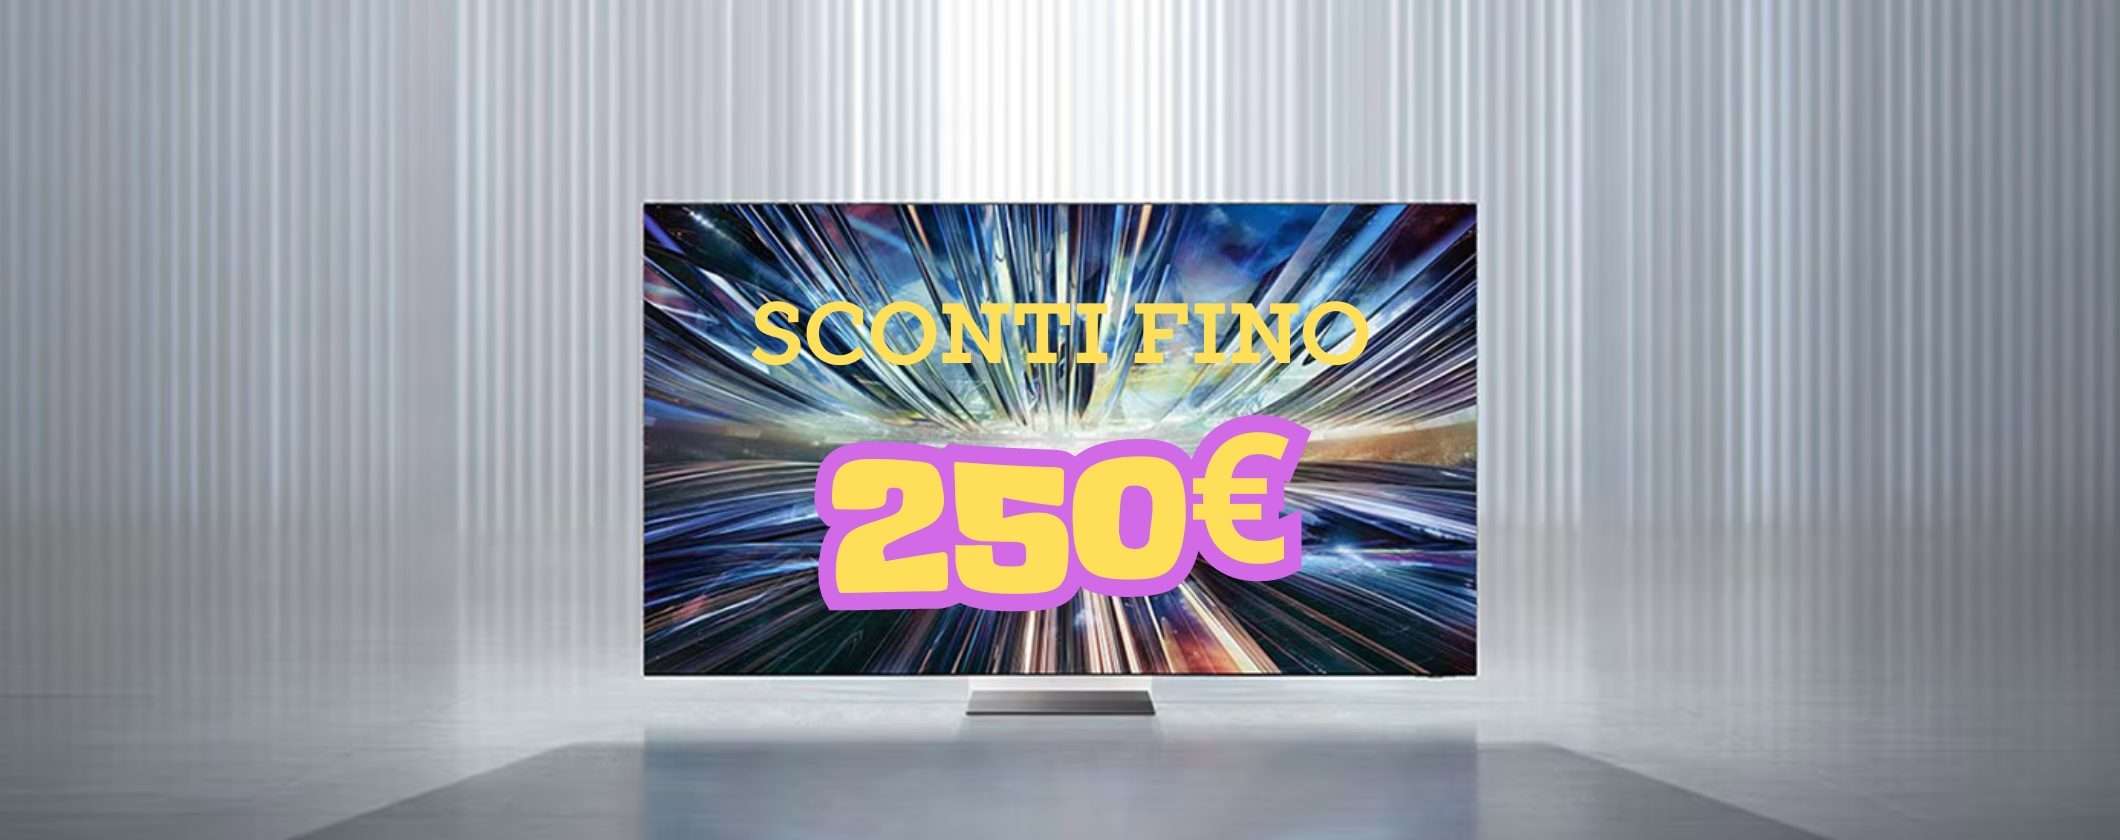 Samsung TV: SCONTI PAZZESCHI fino a 250€ per TUTTI